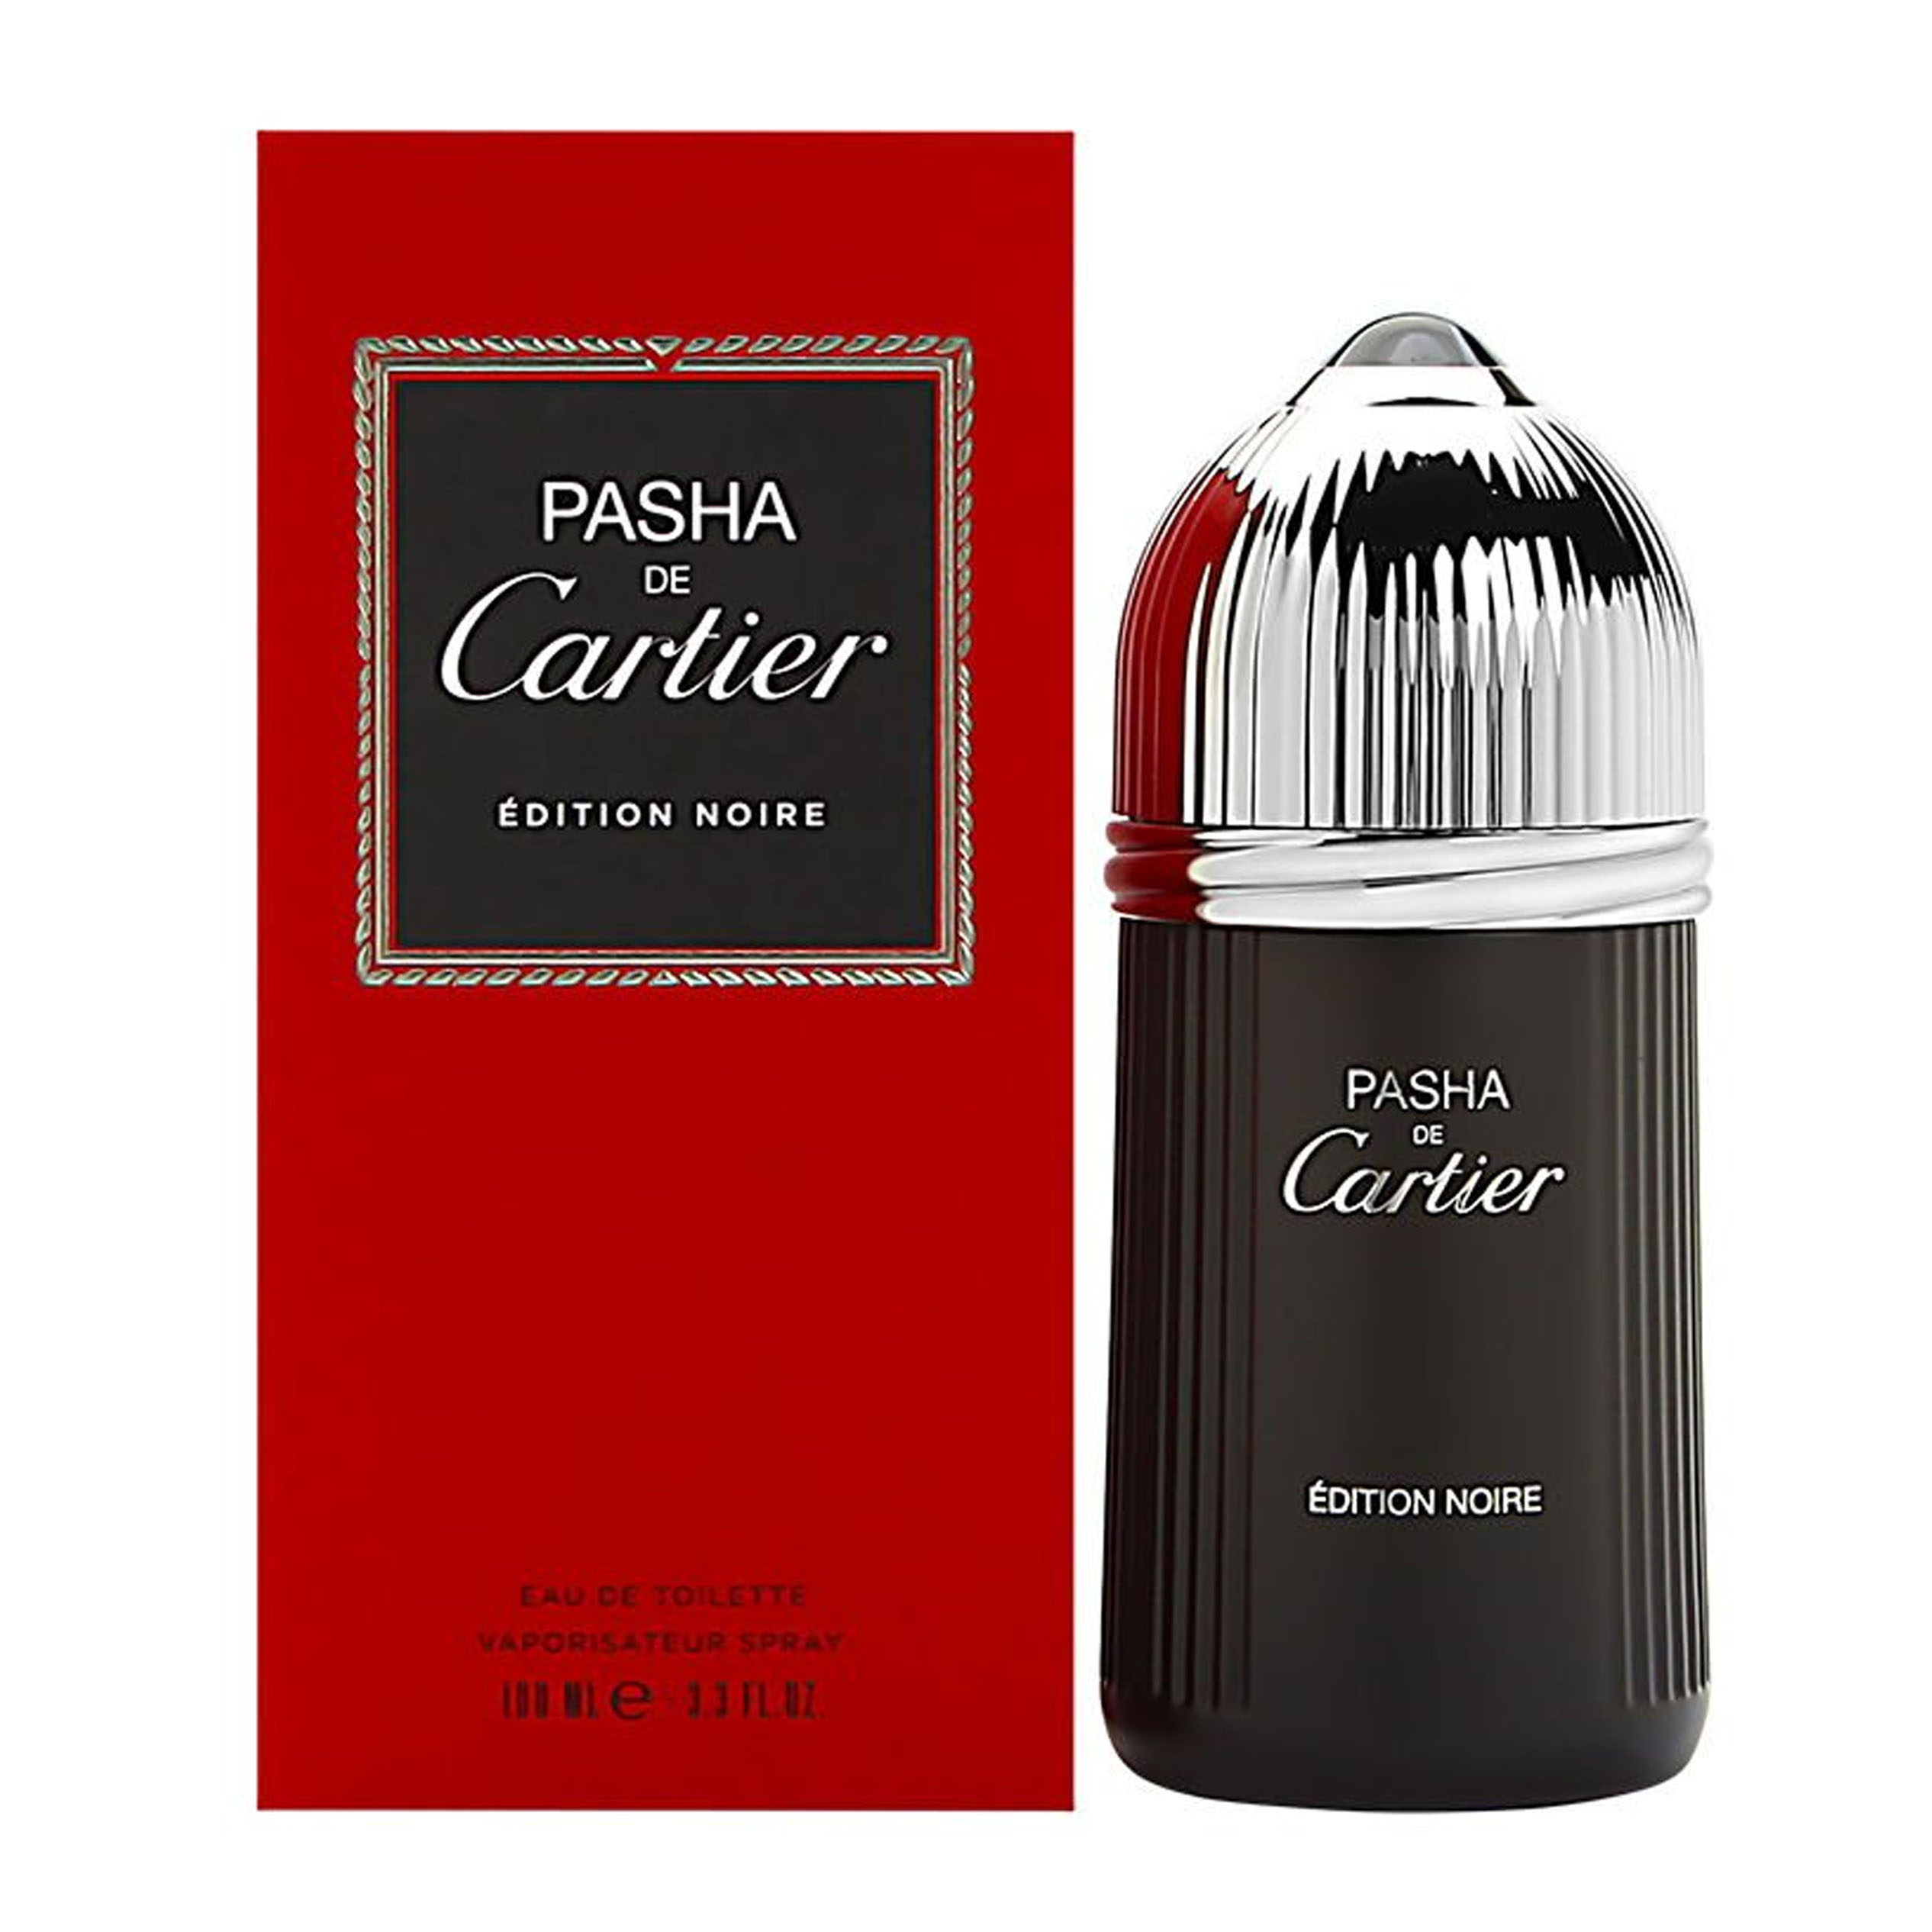 Perfume Pasha De Cartier Edition Noire    (Replica Con Fragancia Importada)- Hombre